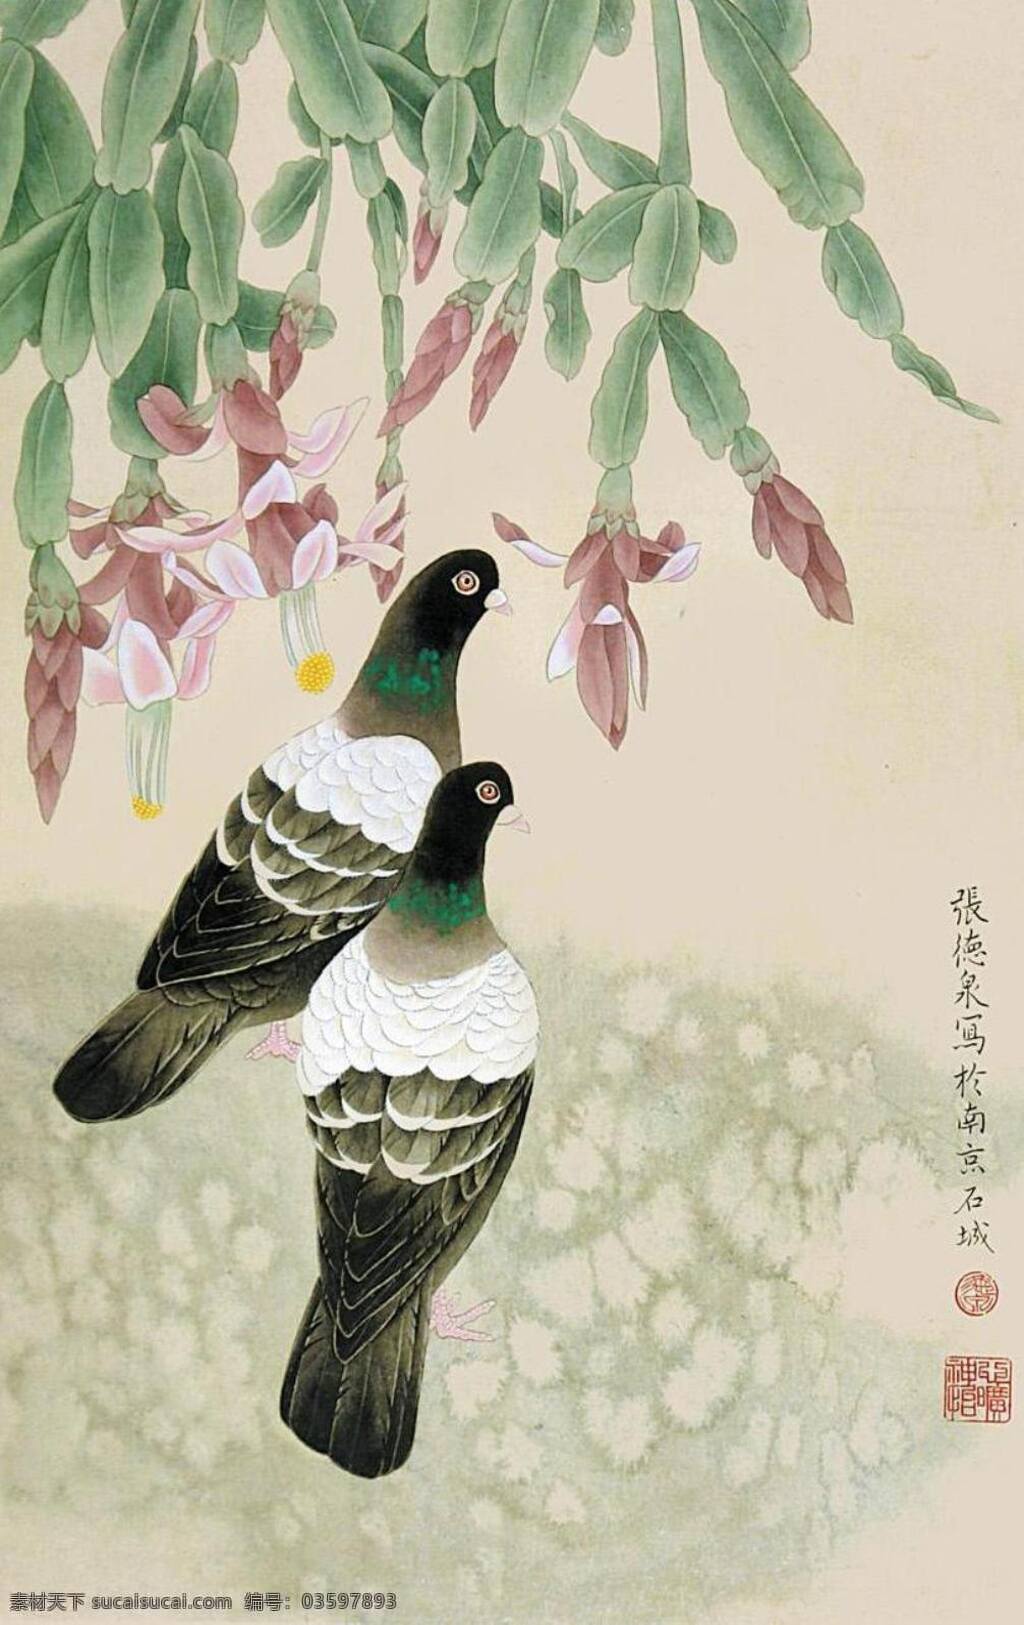 鸽子 中国画 工笔画 花鸟画 张德泉 写生 绘画书法 文化艺术